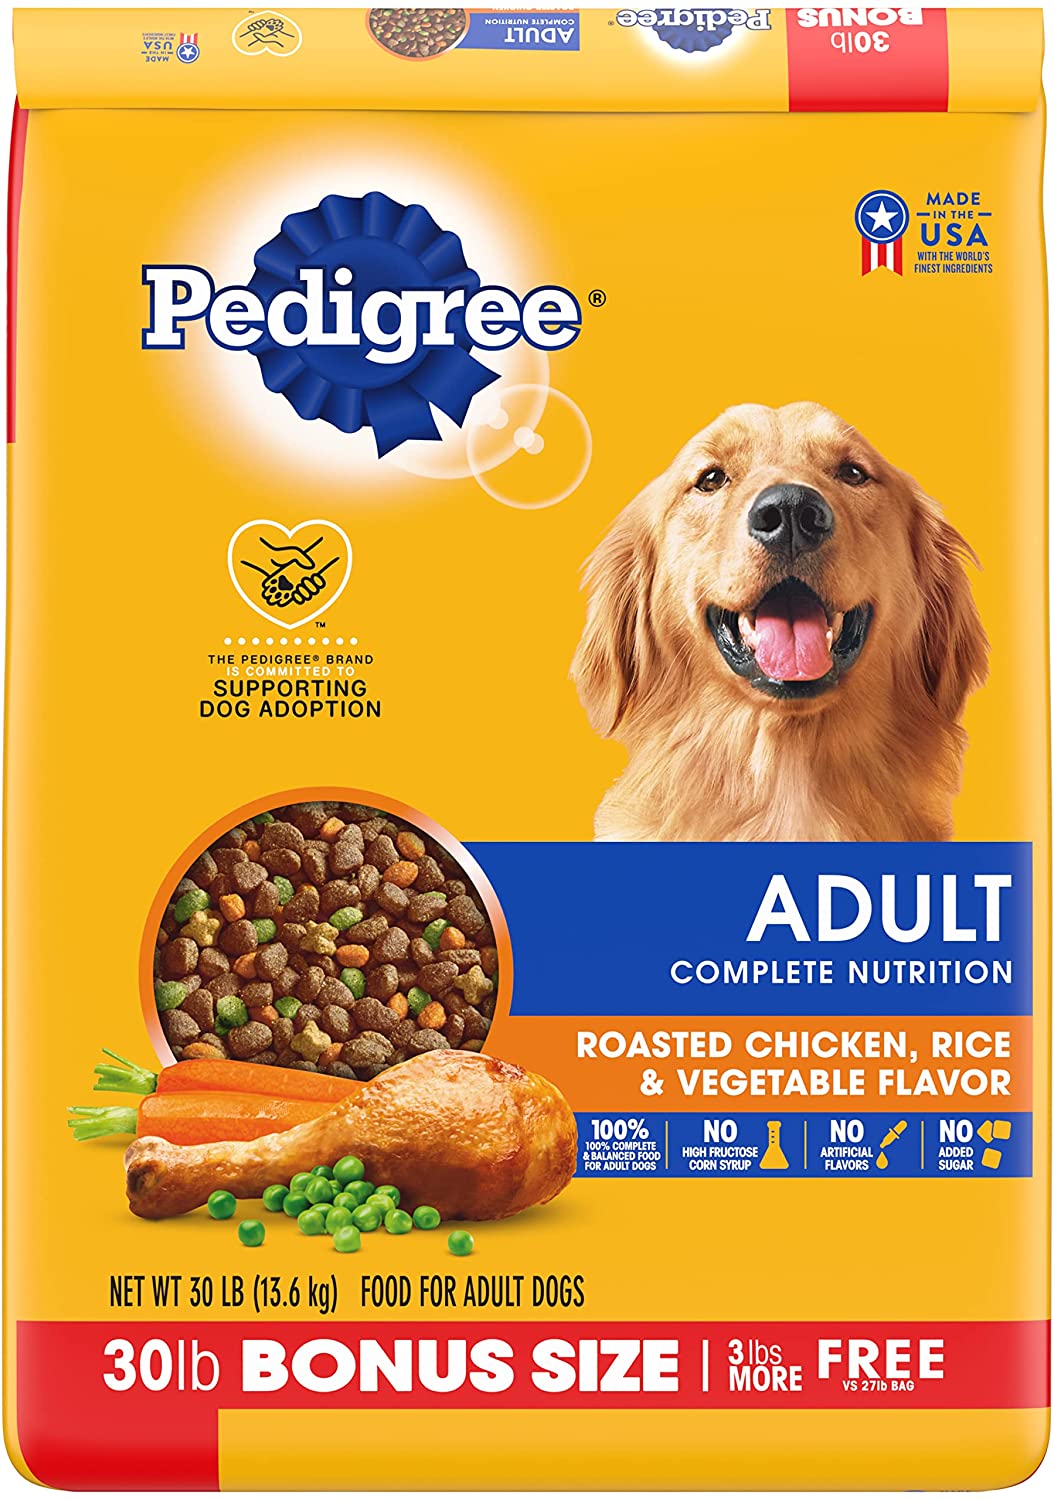 Images Of Dog Food - KibrisPDR